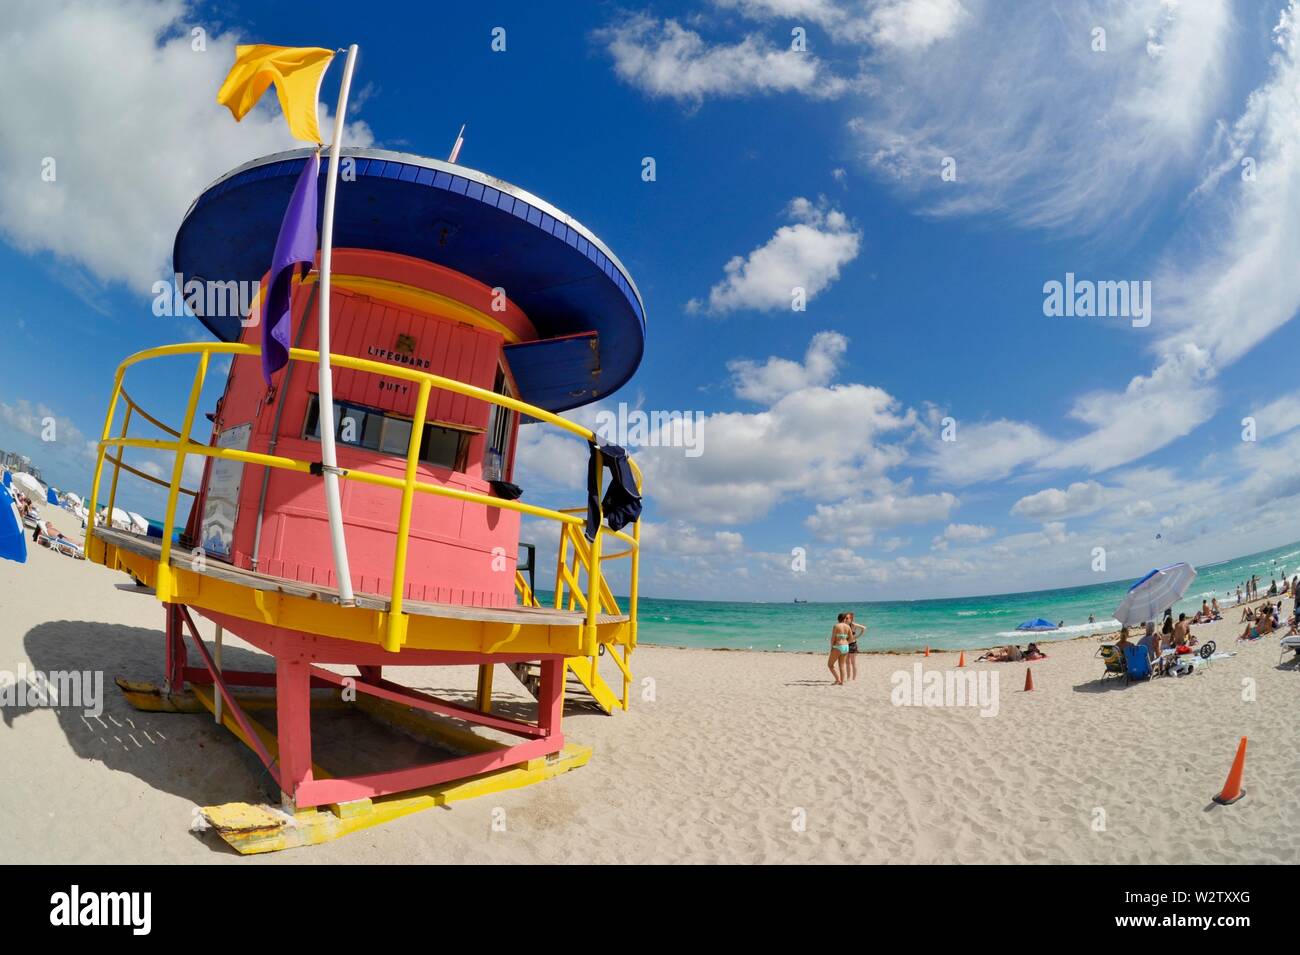 Station de sauvetage de couleur structure tour de style art déco sur la populaire plage de sable blanc de South Beach, Miami, Floride, USA Banque D'Images